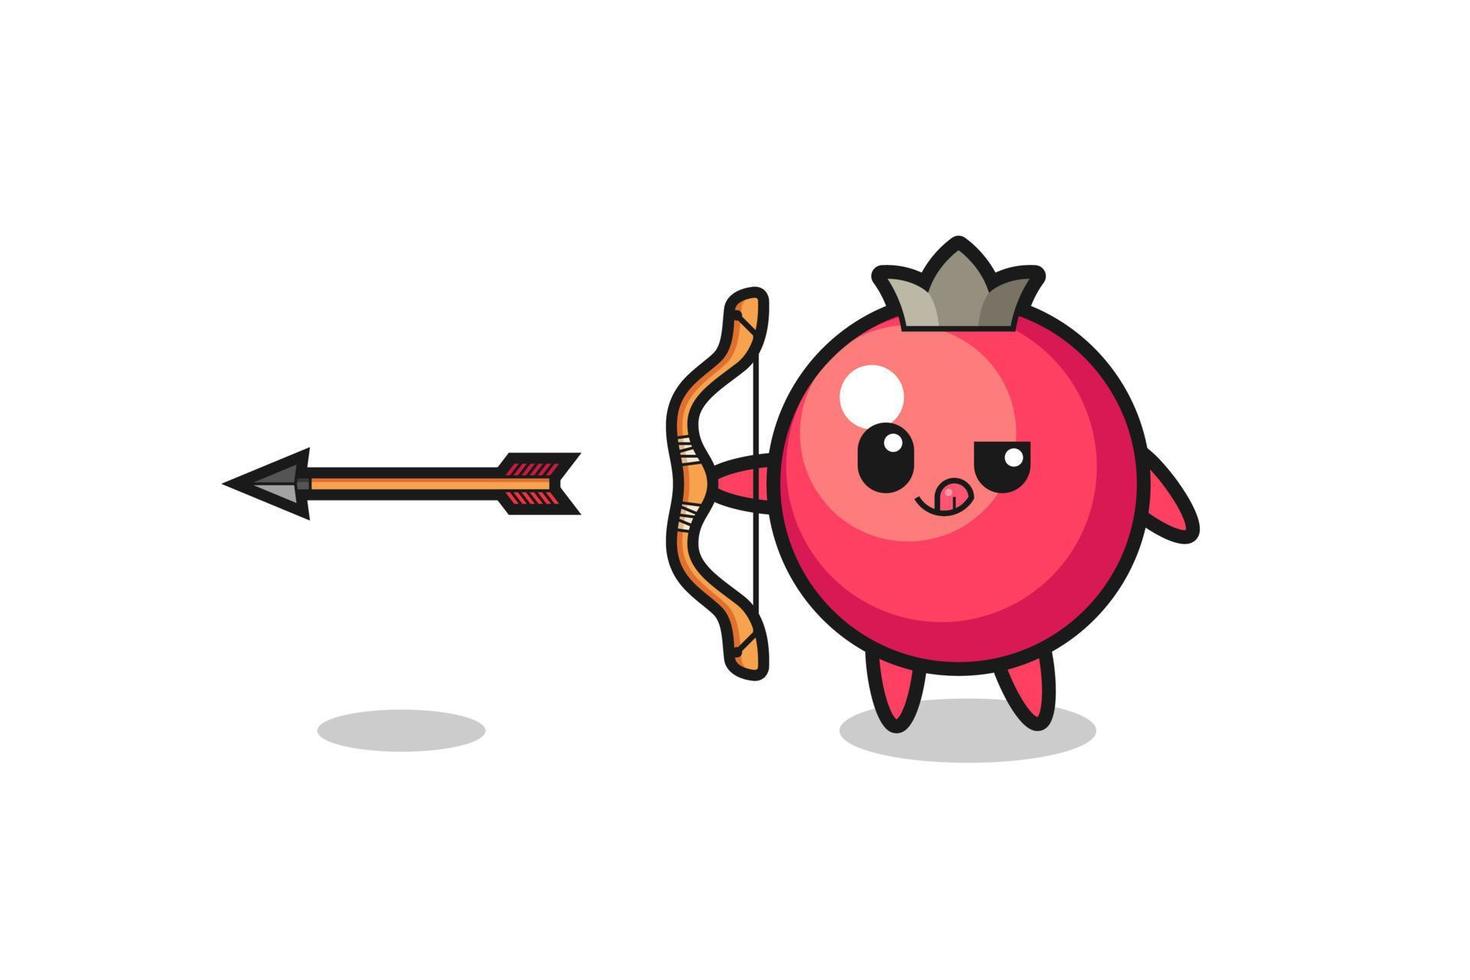 illustratie van cranberry-personage dat boogschieten doet vector